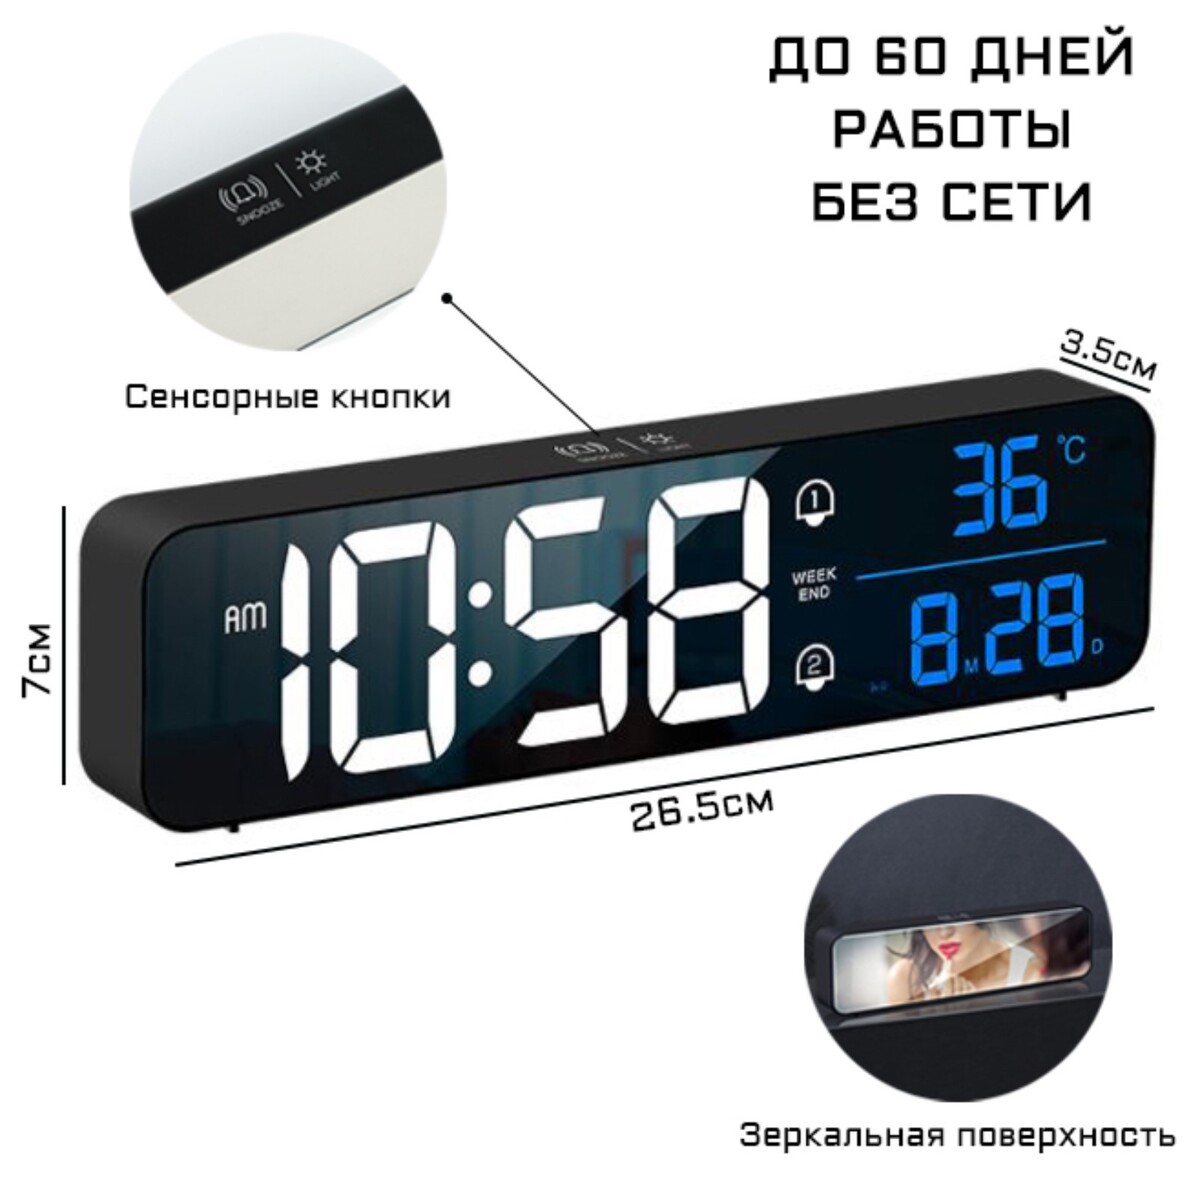 Часы электронные настольные с будильником, с подвесом, 2400 мач, 3.5 х 7 х 26.5 см часы электронные настенные настольные с будильником 36 х 15 х 3 см белые цифры